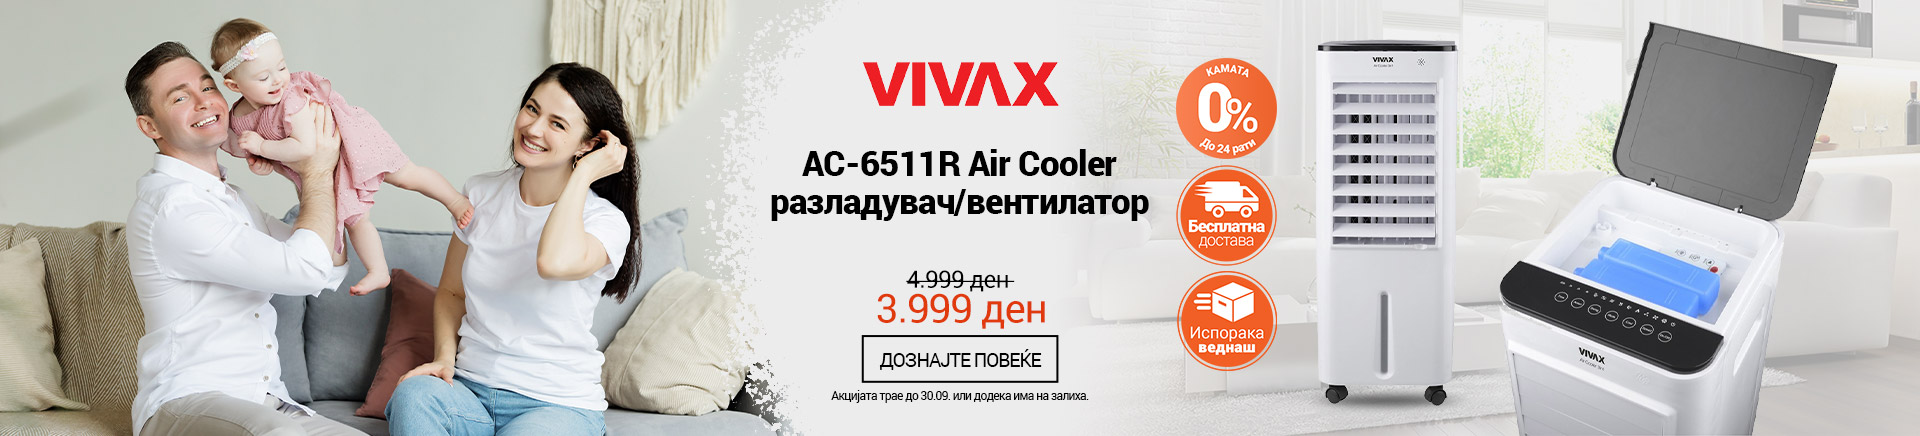 MK VIVAX AC-6511R Air Cooler MOBILE 380 X 436.jpg